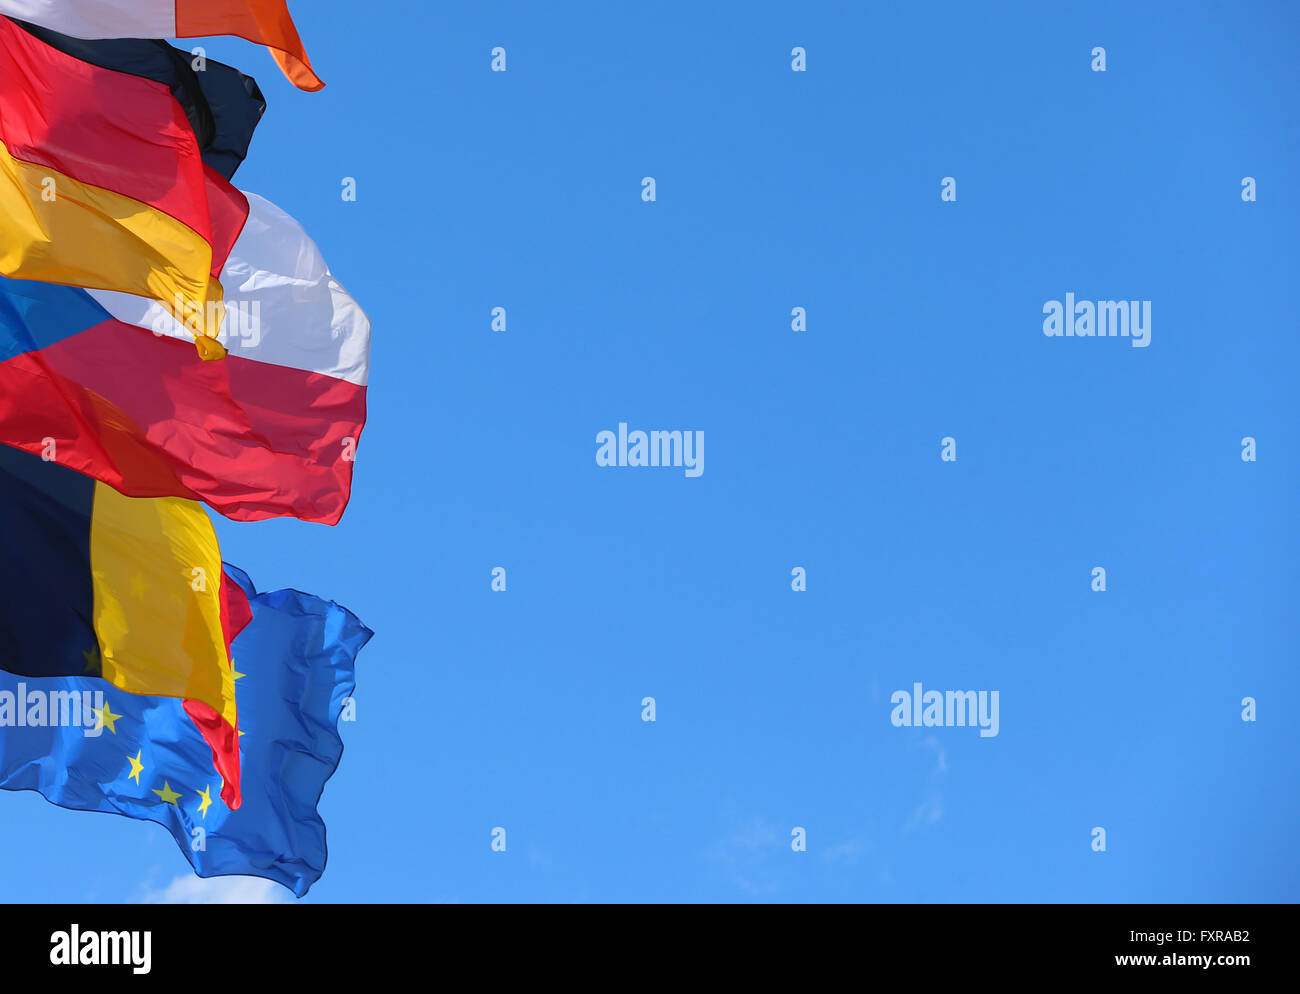 Strasbourg, France. 12 avr, 2016. Les drapeaux nationaux des États membres de l'Union européenne balancent dans le vent joint à mâts devant le bâtiment du parlement européen à Strasbourg, France, 12 avril 2016. Photo : Karl-Josef Opim/dpa/Alamy Live News Banque D'Images